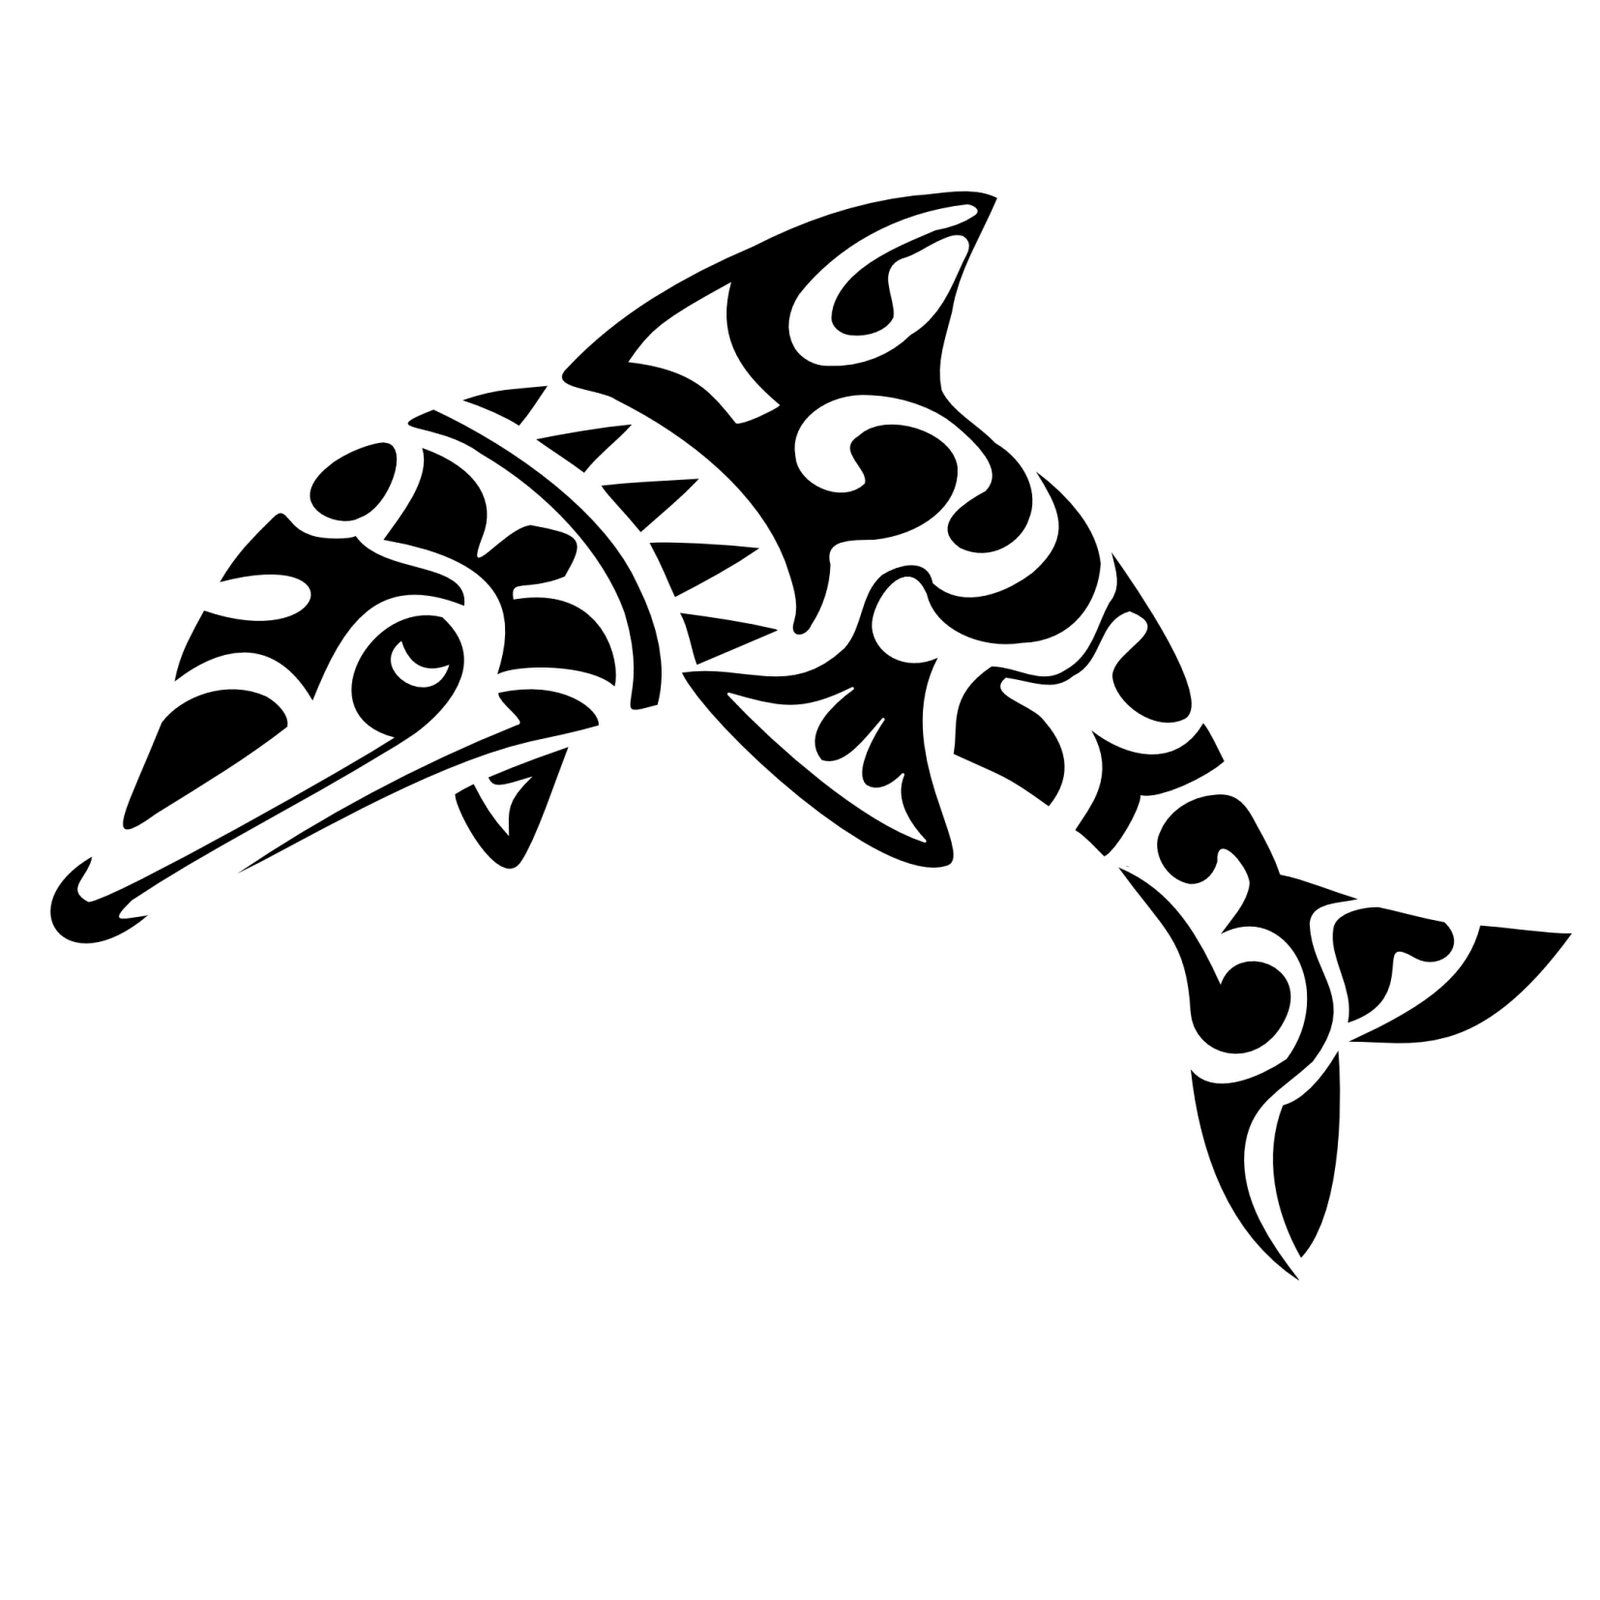 http://2.bp.blogspot.com/-1w3-lWzgt-I/TisWfyu1vsI/AAAAAAAAImU/4LV__6XgaDo/s1600/Maori+Dolphin+Tattoo+Pattern.png